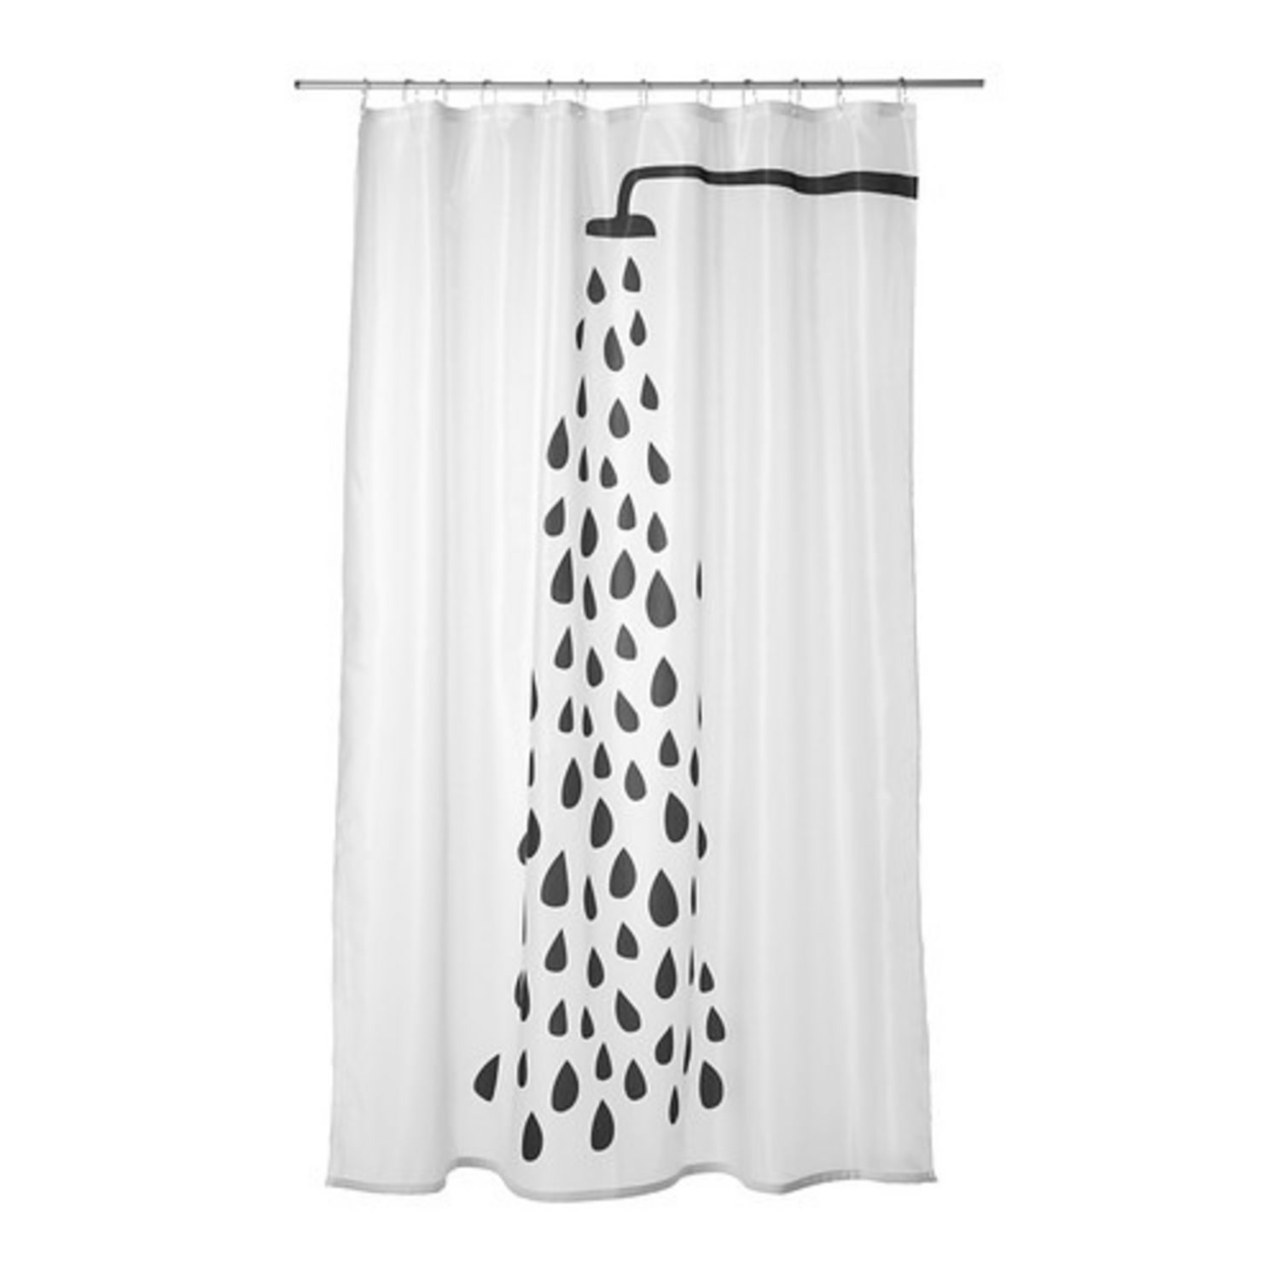 10 interior design bathroom shower curtains courtesy vendors